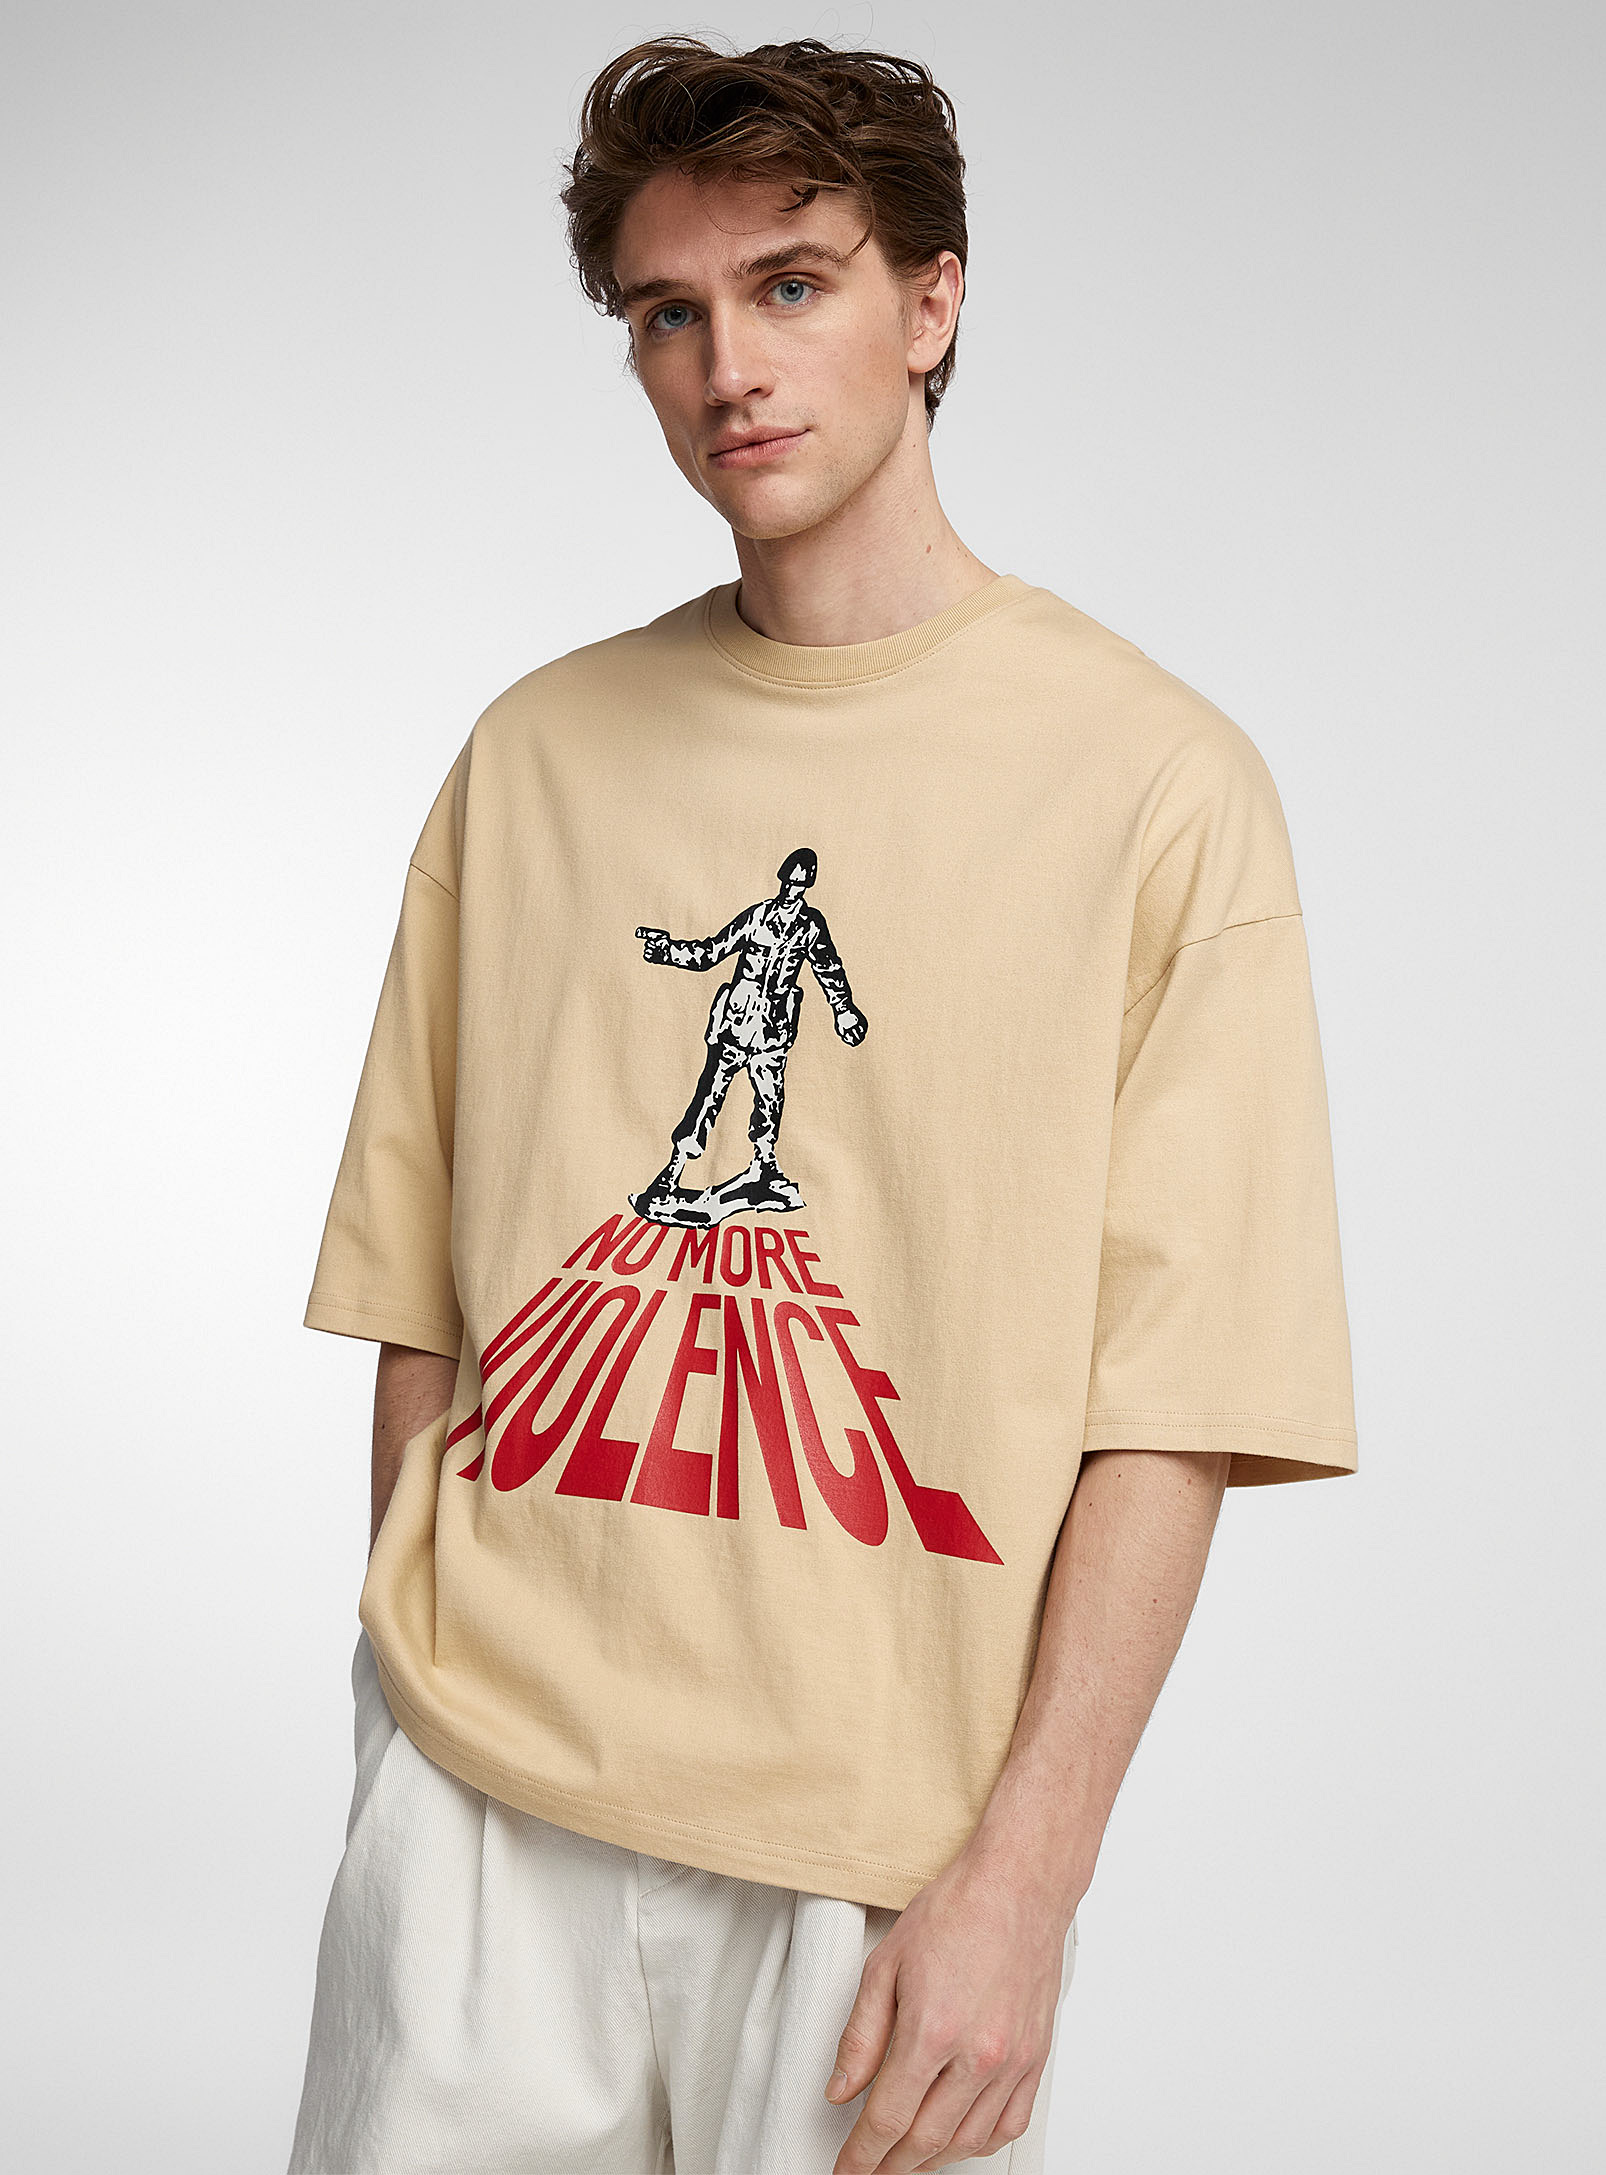 Tee Shirt Library - Men's No More Violence T-shirt